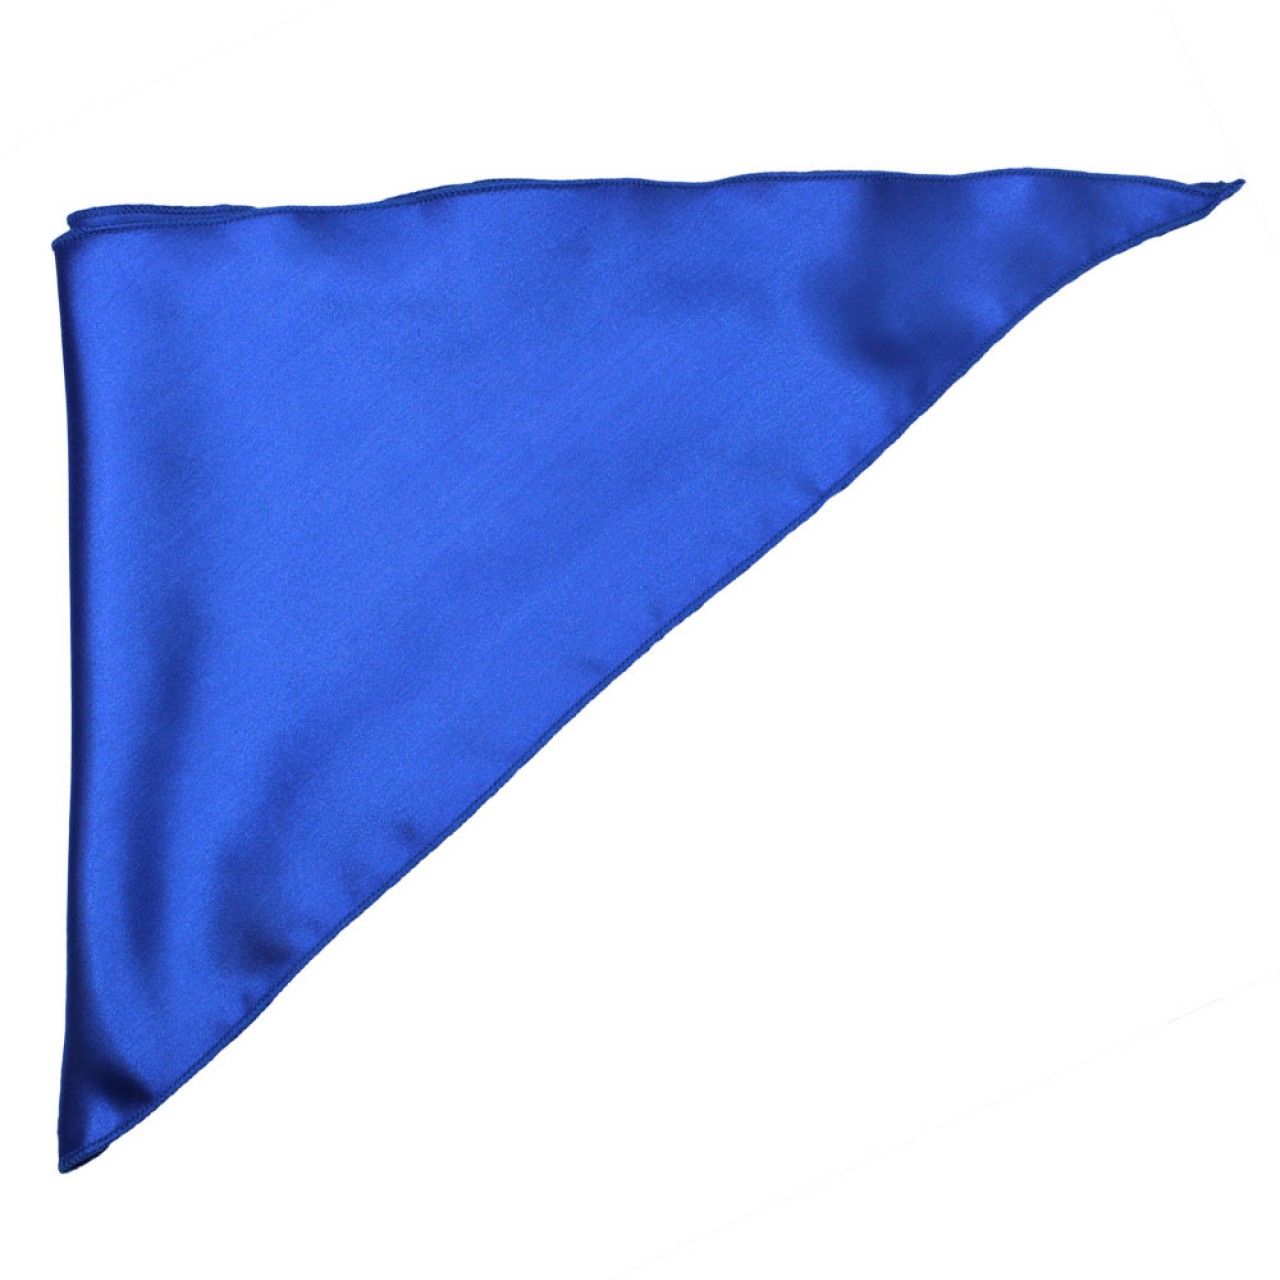 Σατέν Φουλάρι Μαντήλι Παρέλασης Τρίγωνο 90cm x 35cm Μπλε Ρουά